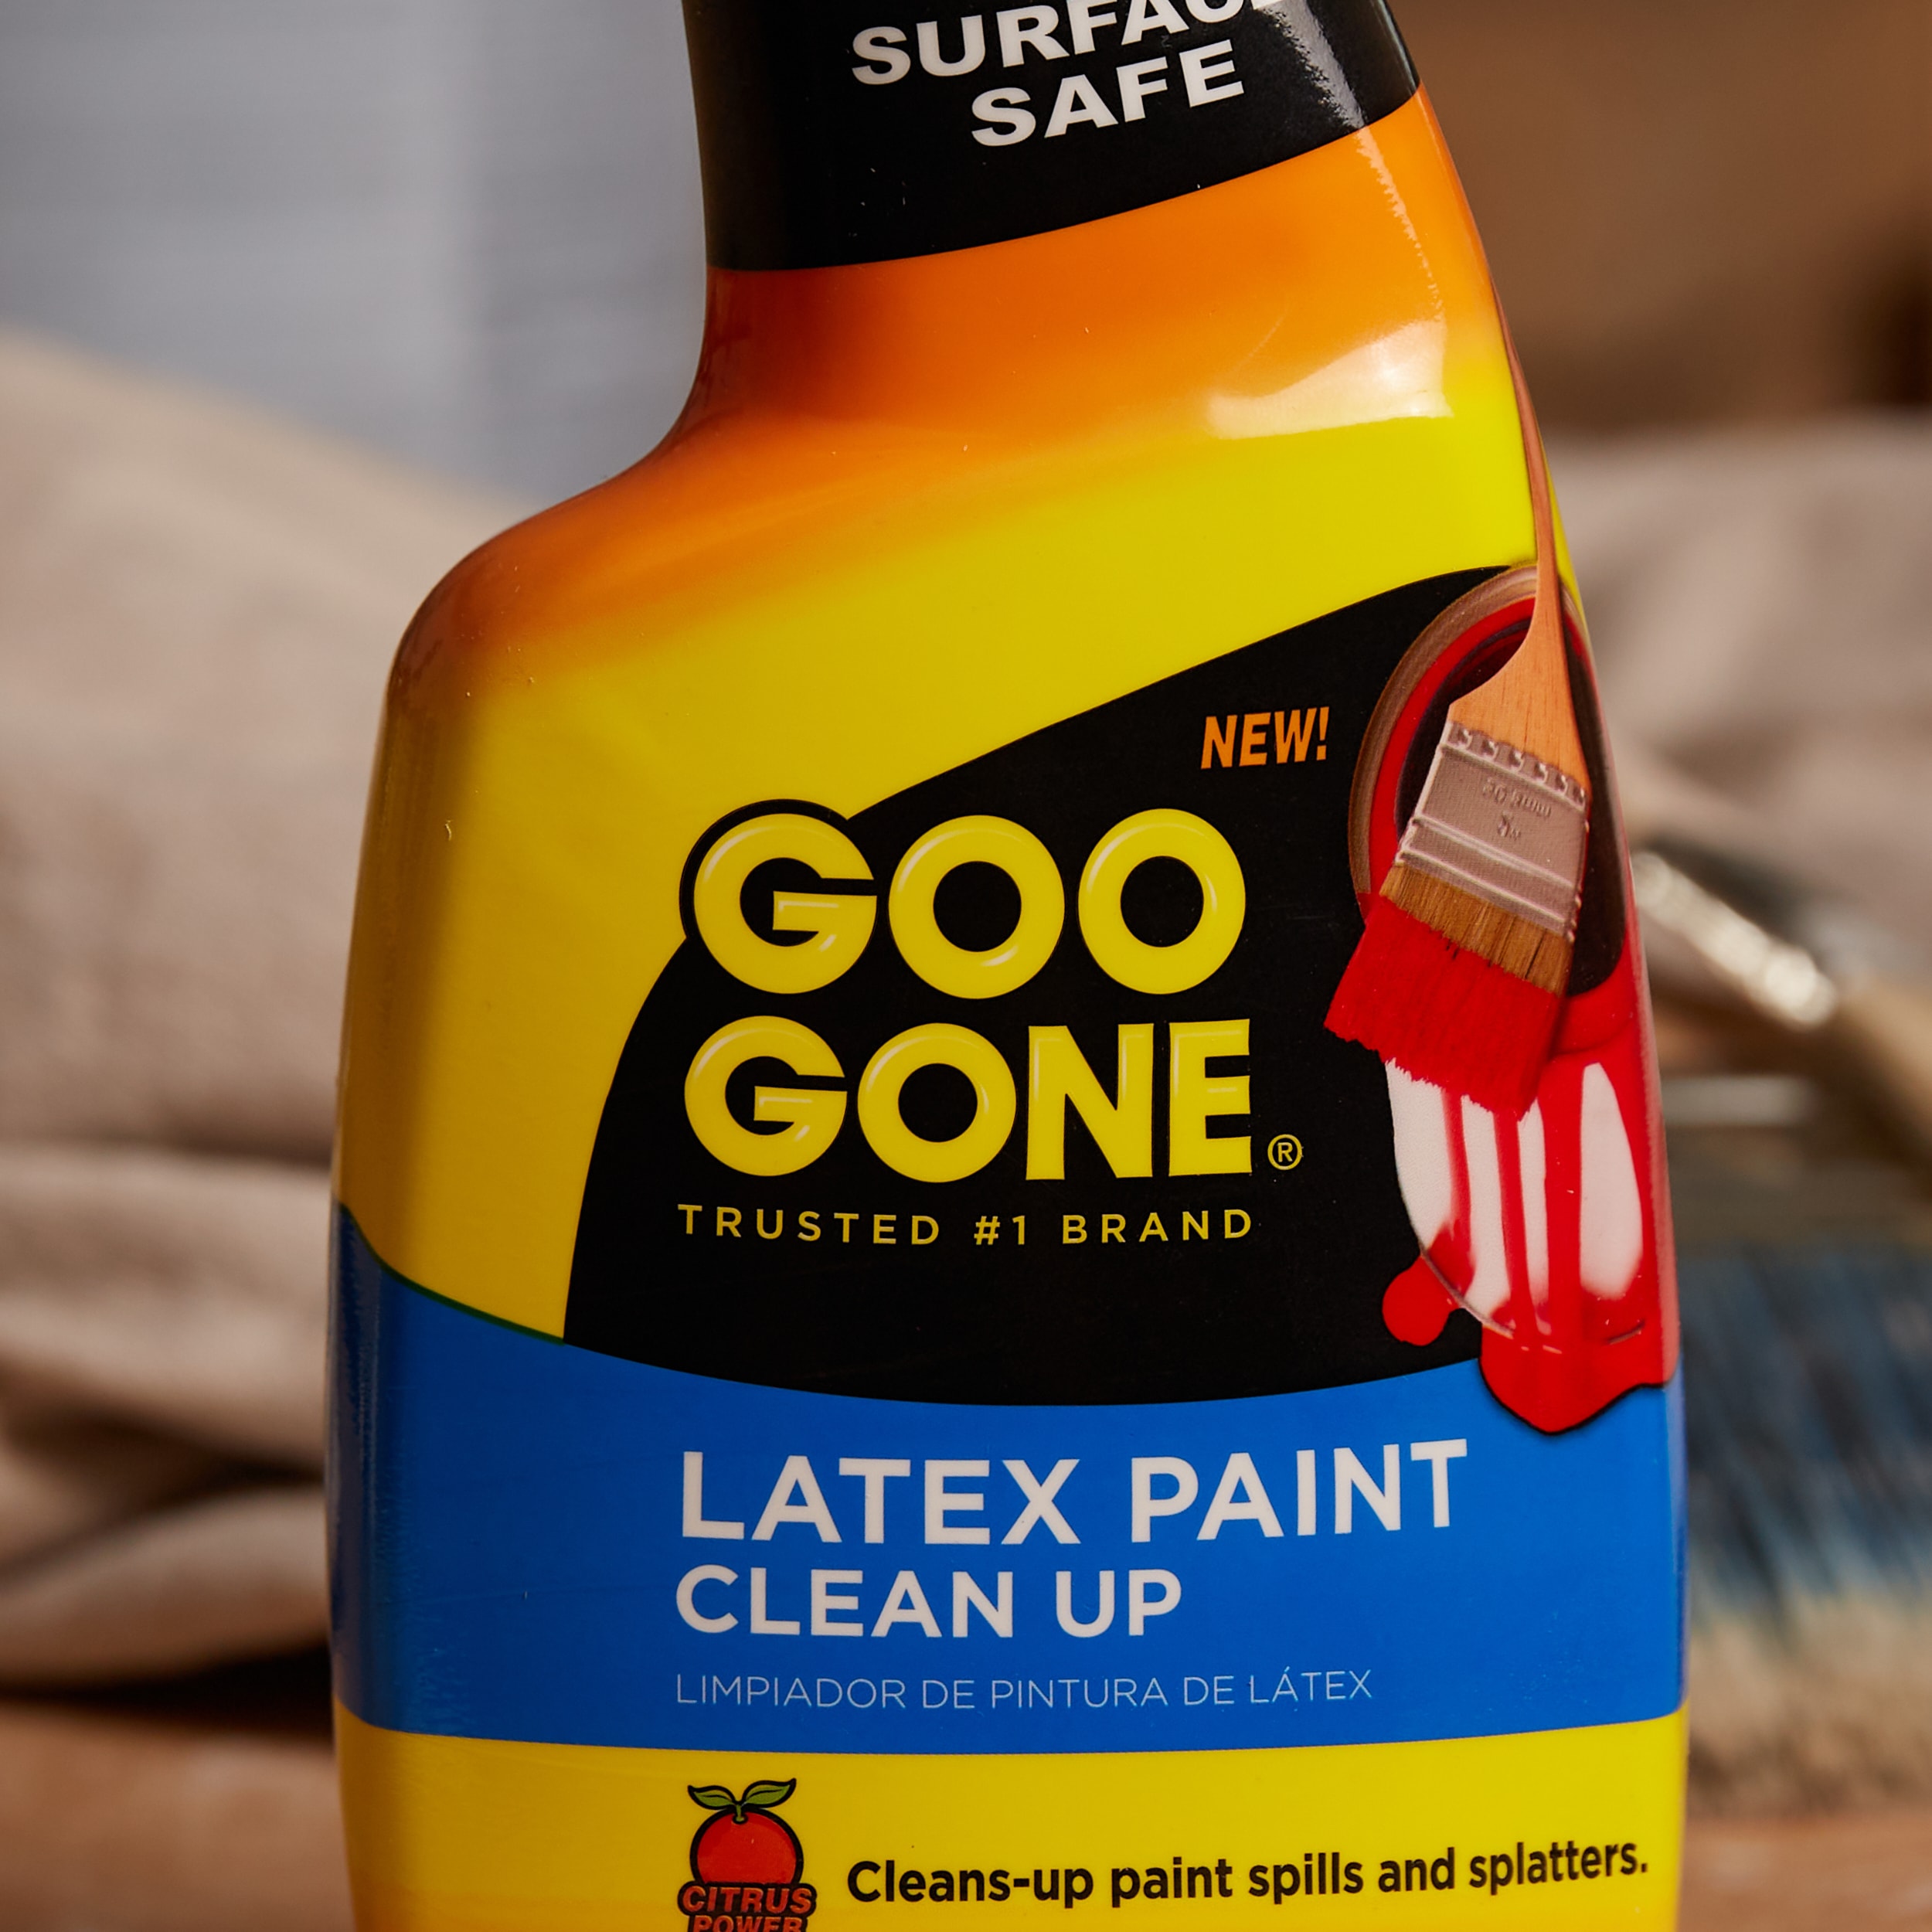  Goo Gone Rust Remover - Outdoor and Indoor Metal